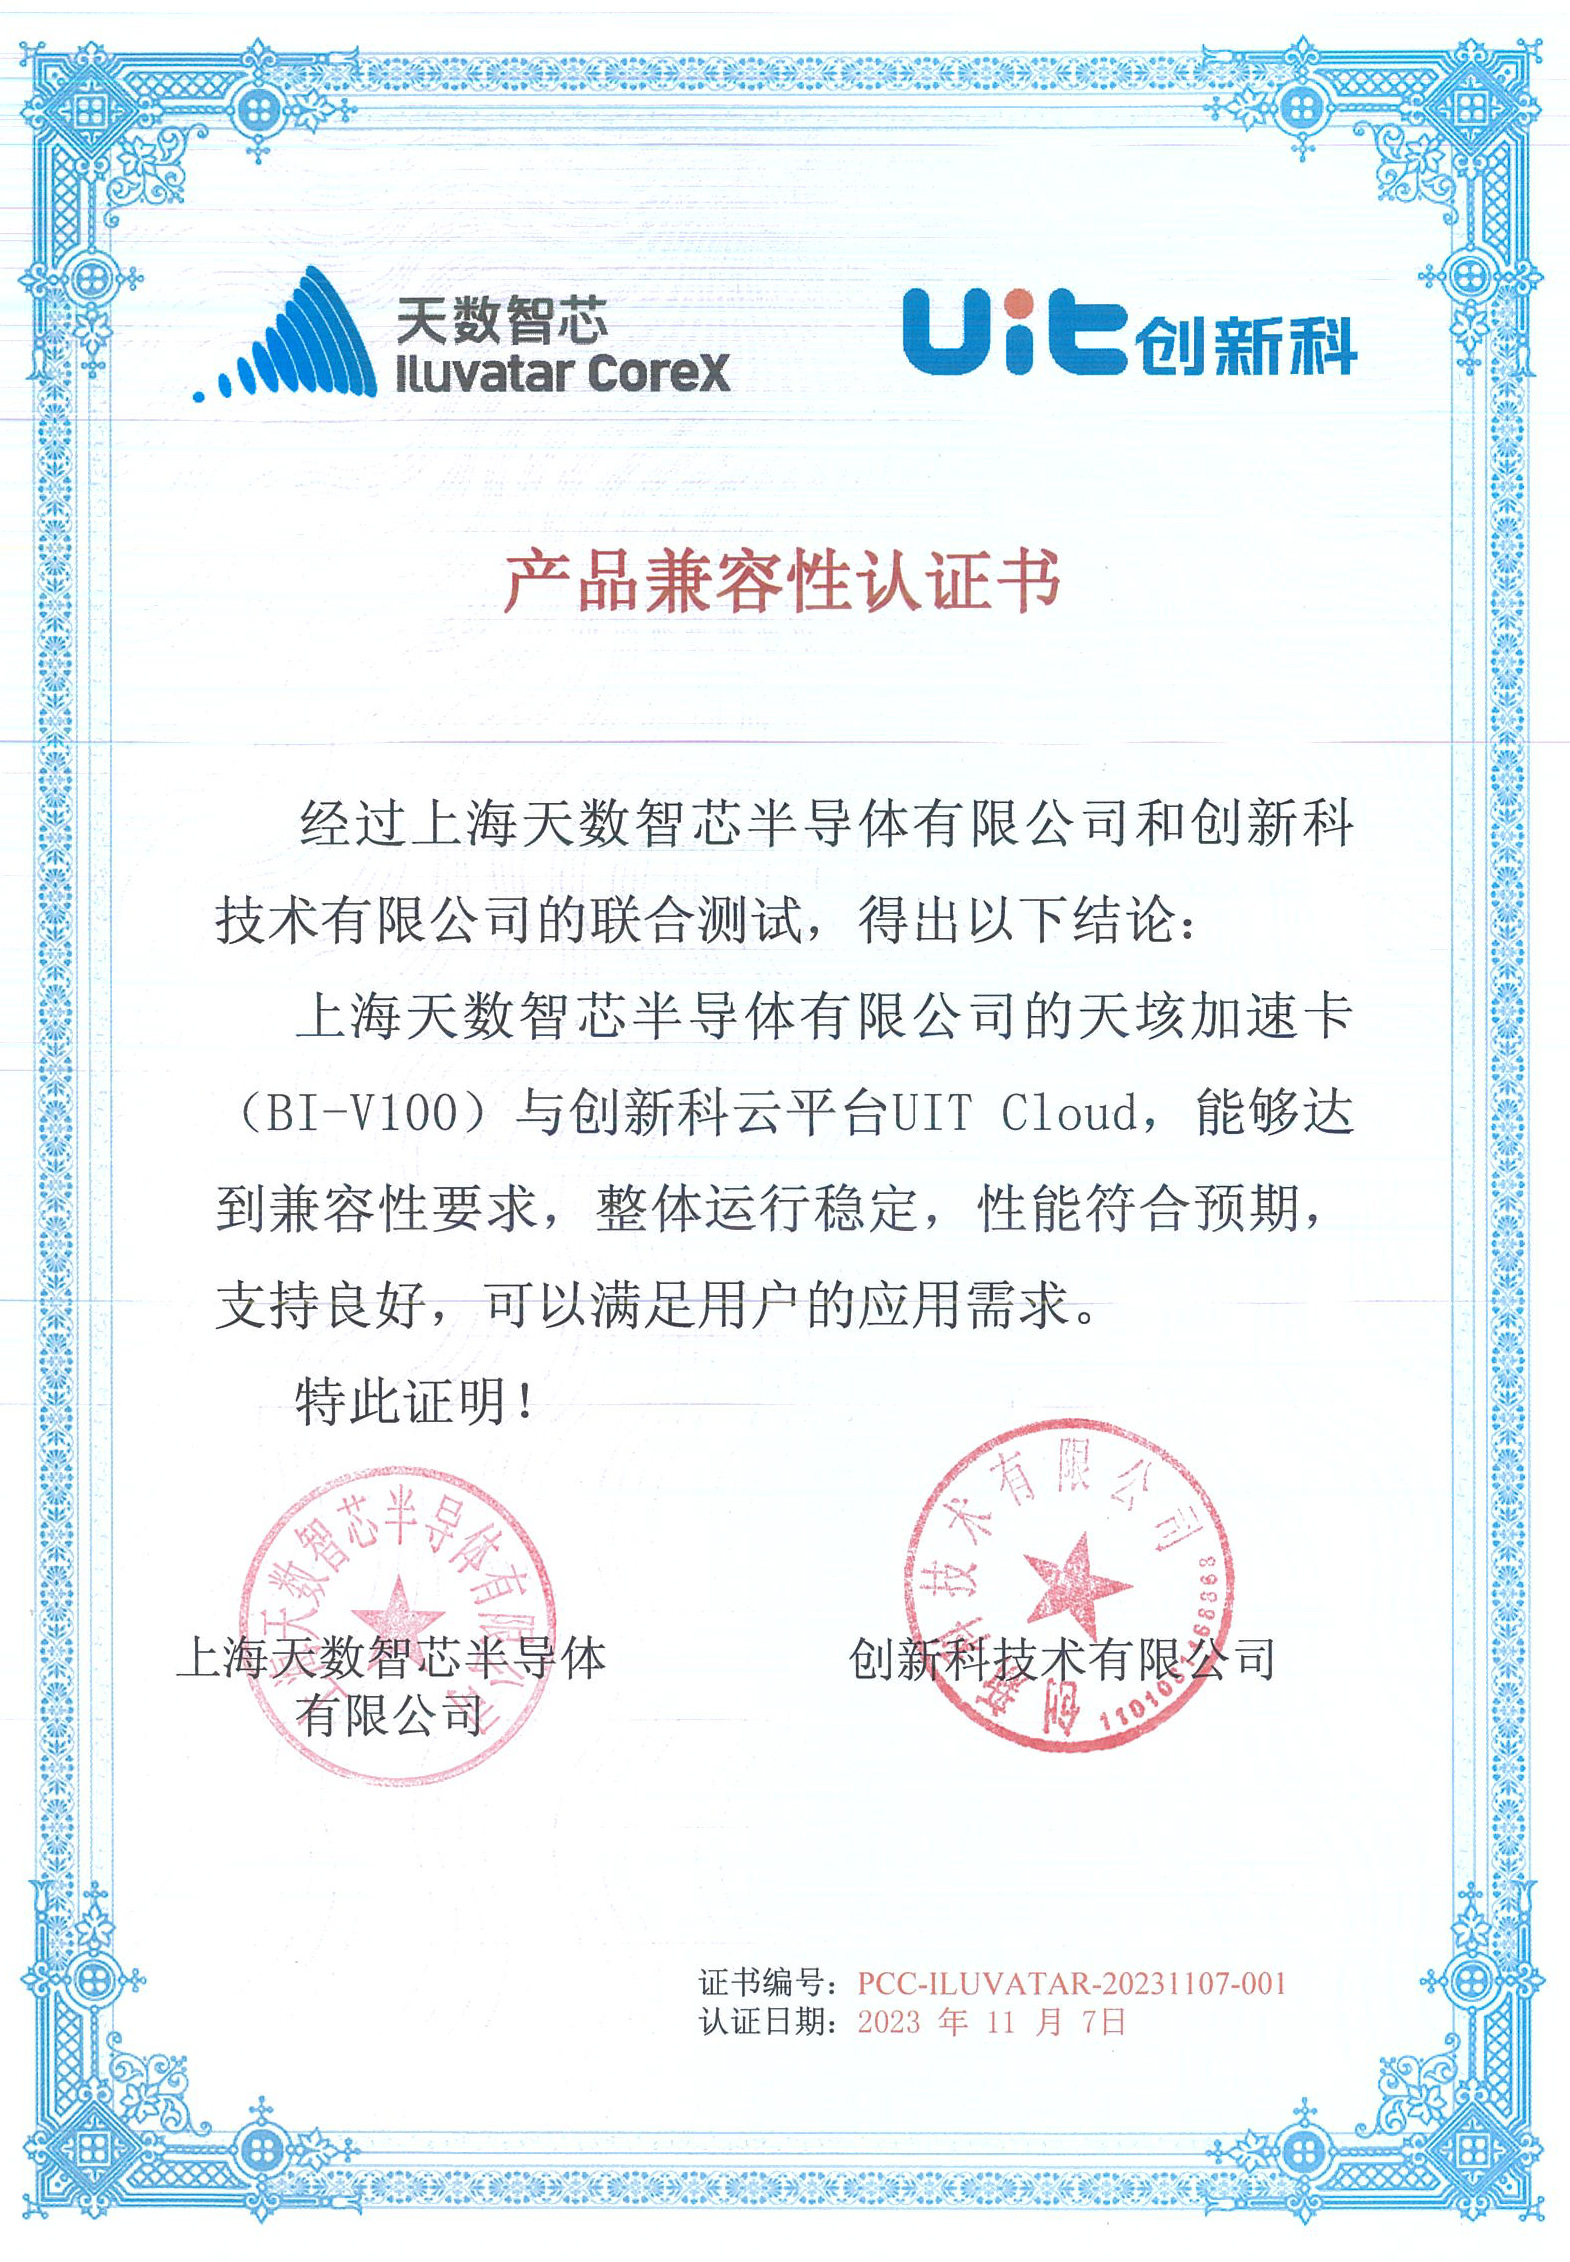 20231107 兼容性认证书 创新科云平台uit cloud 与天数智芯bi-v100.jpg